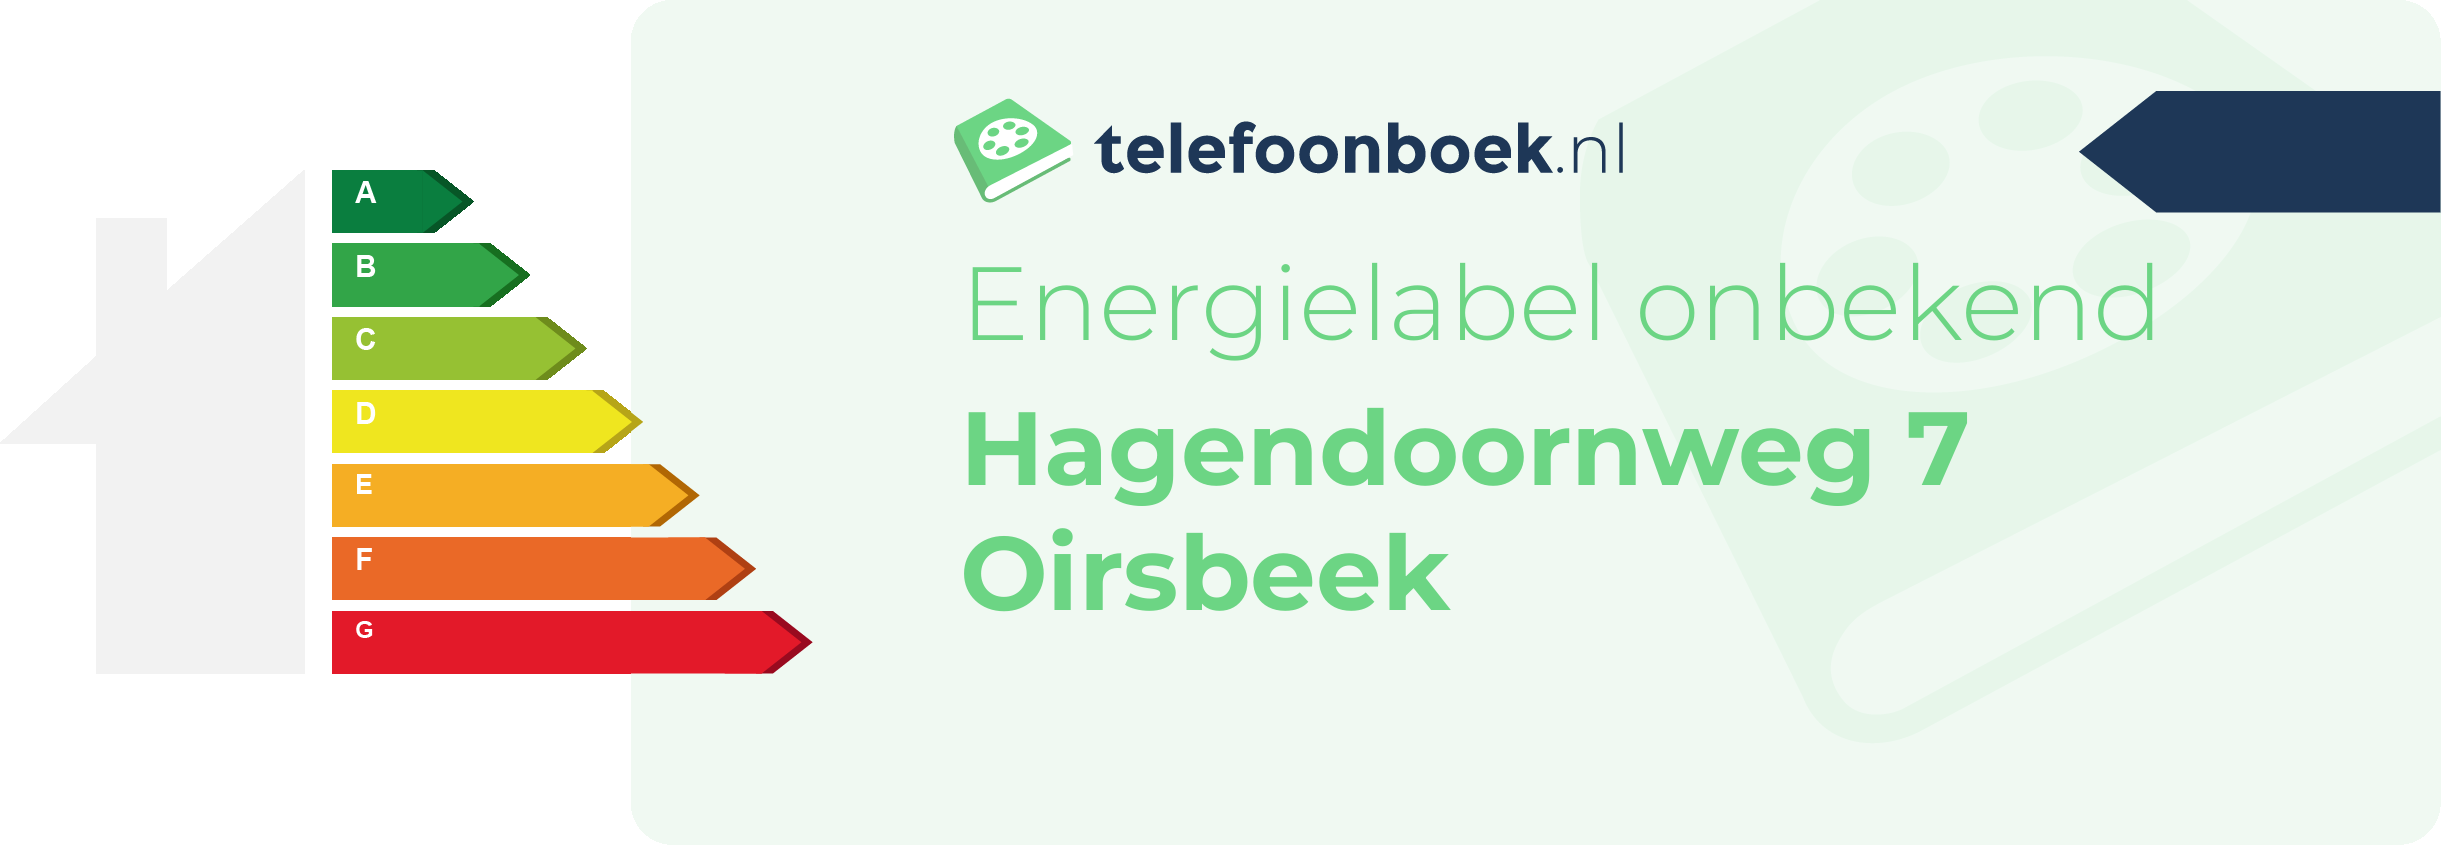 Energielabel Hagendoornweg 7 Oirsbeek